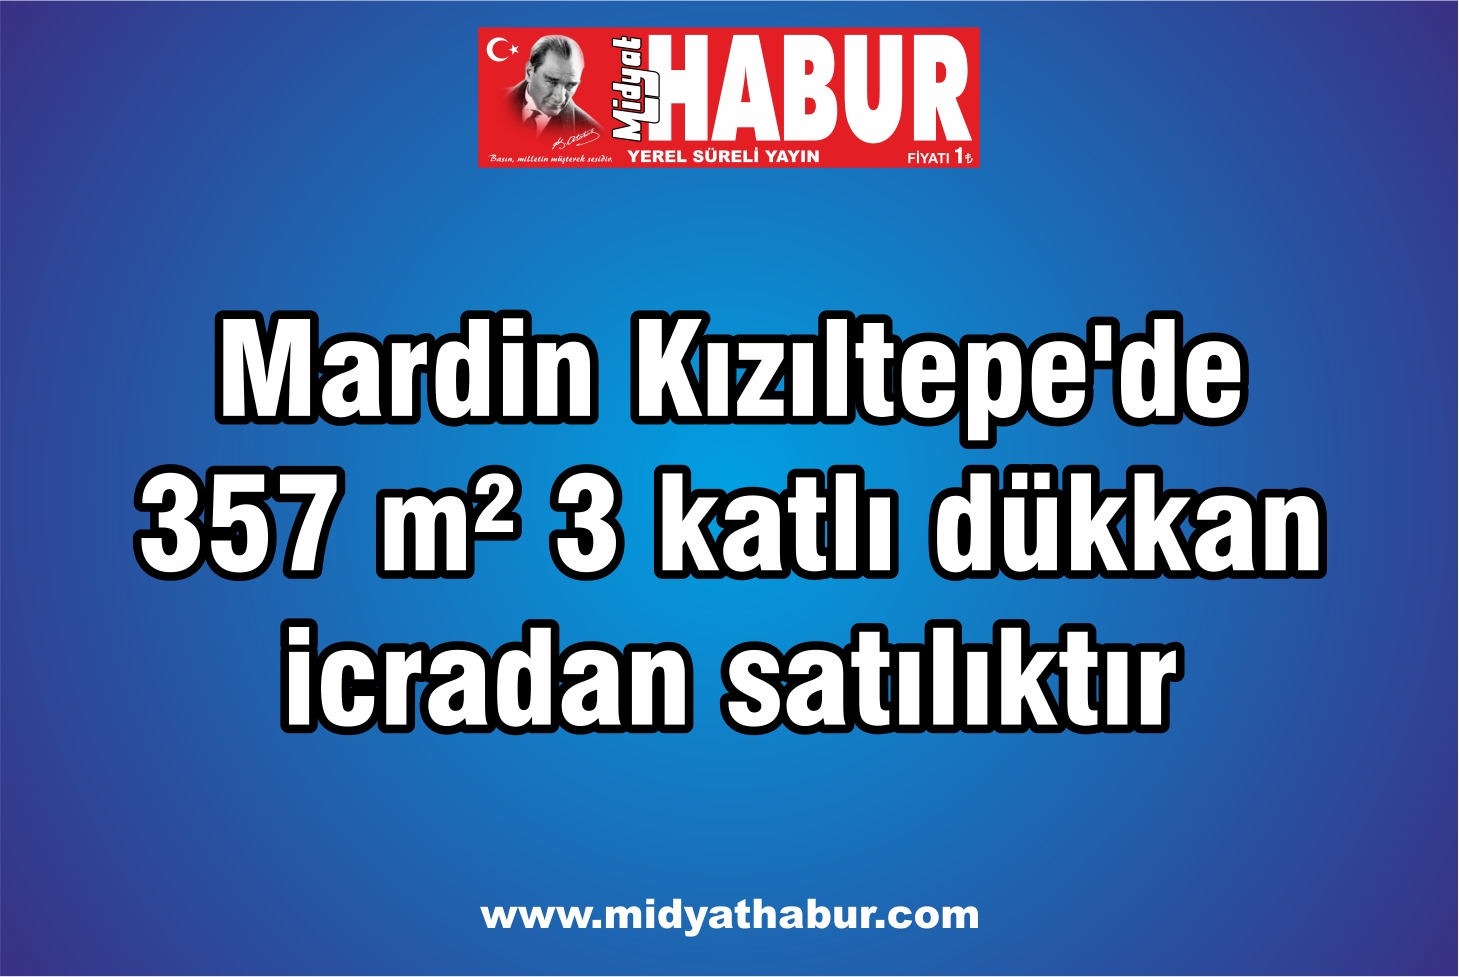 Mardin Kızıltepede 357 m² 3 katlı dükkan icradan satılıktır